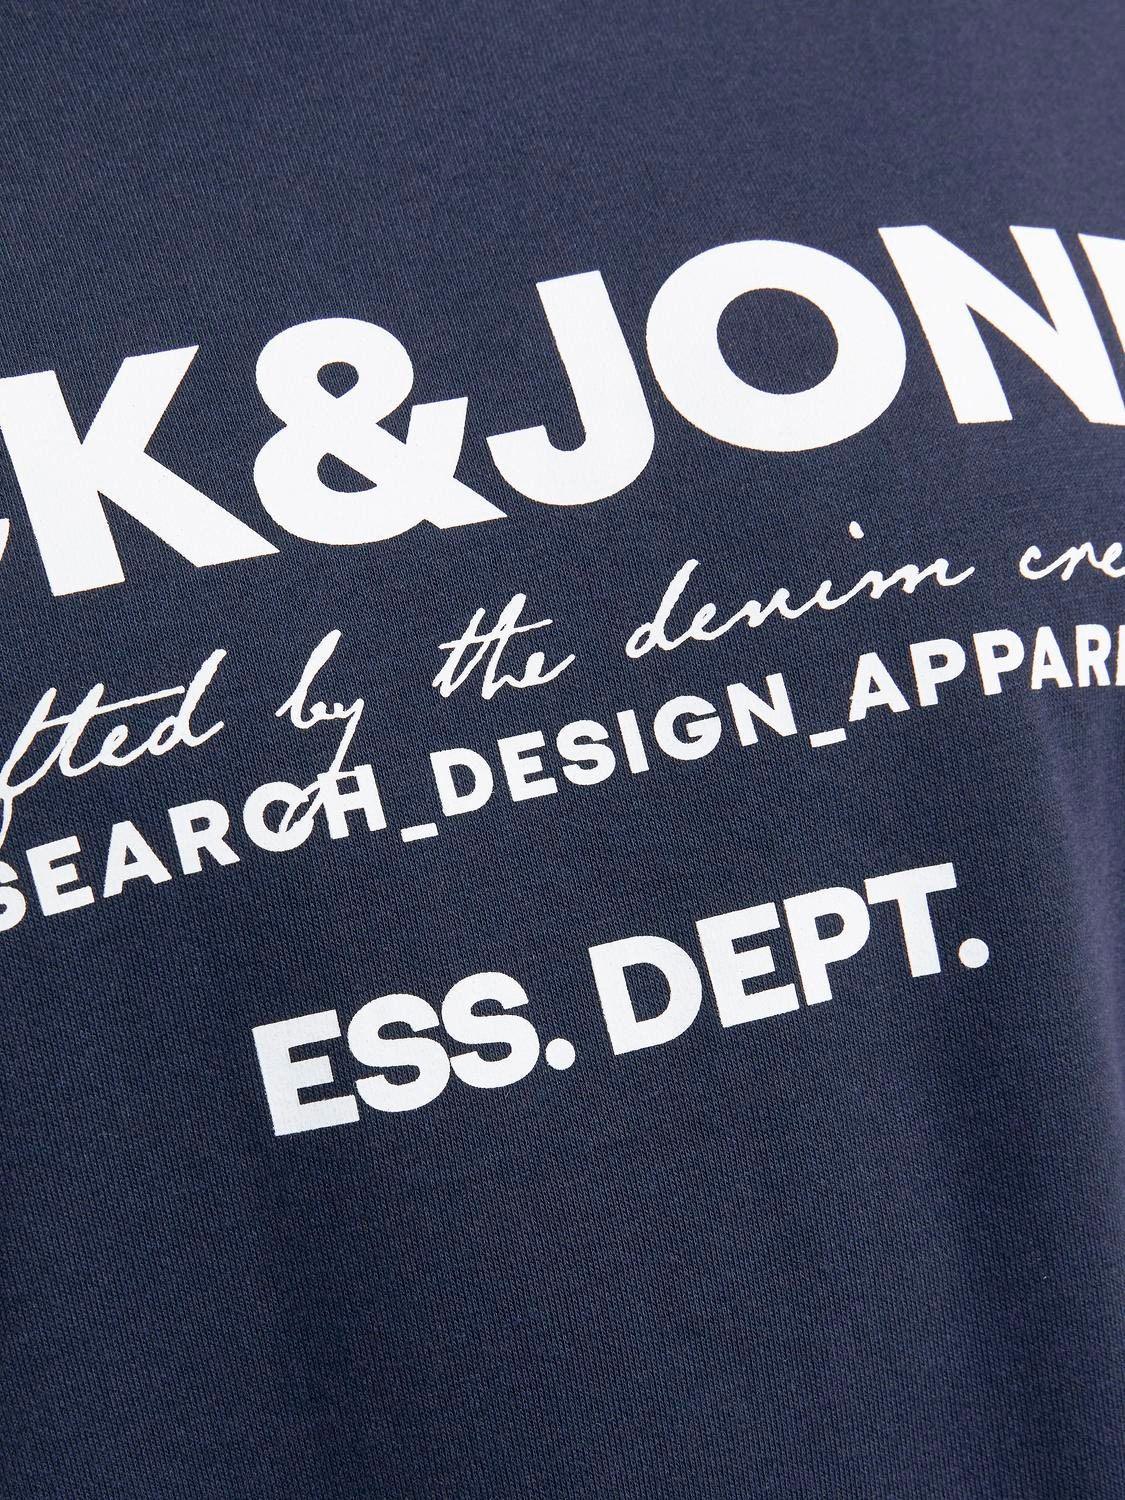 Jack & Jones Plus Size Gedruckt Sweatshirt mit Rundhals -Navy Blazer - 12251054